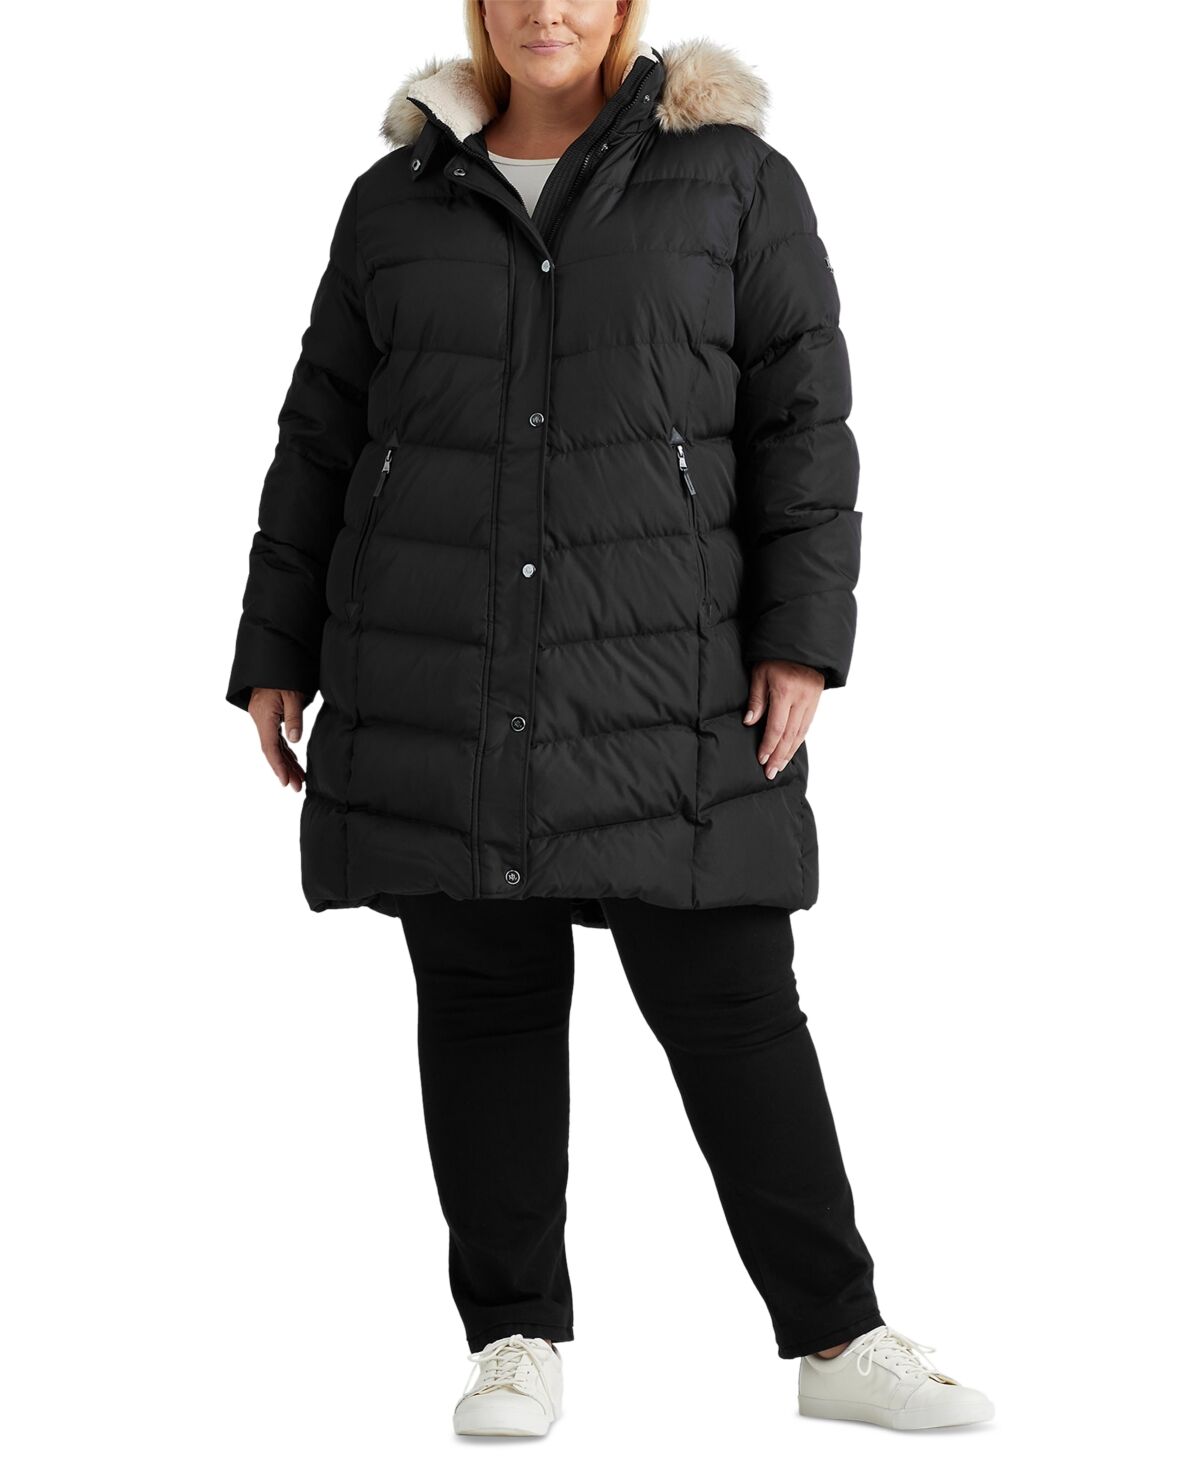 Ralph Lauren Lauren Ralph Lauren Women's Plus Size Faux-Fur-Trim Hooded Puffer Coat - Black